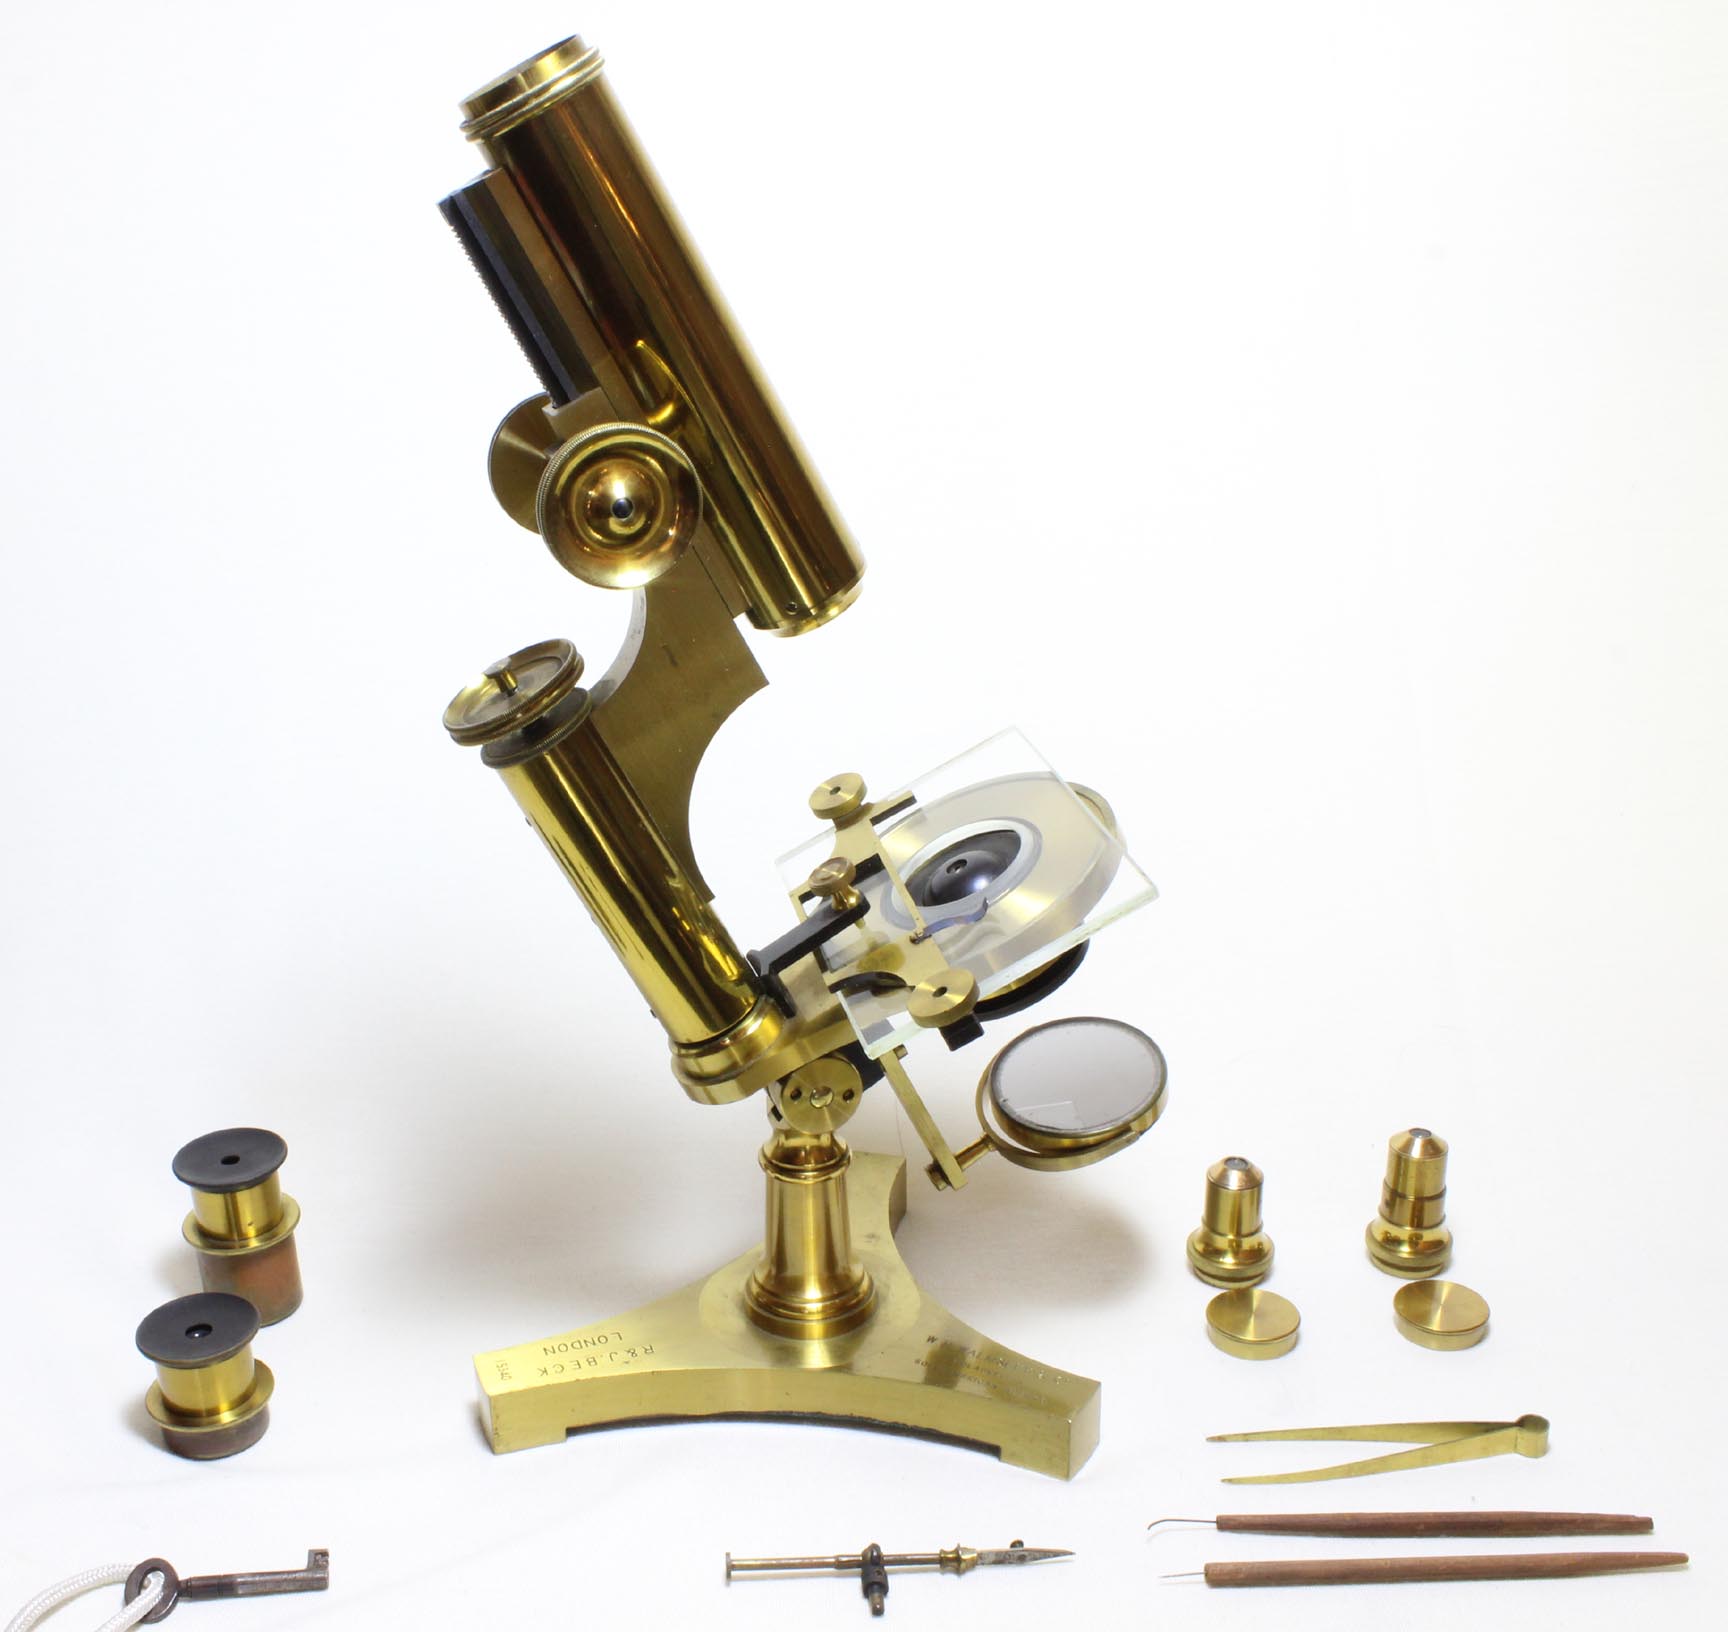 Beck Economic Microscope, Case